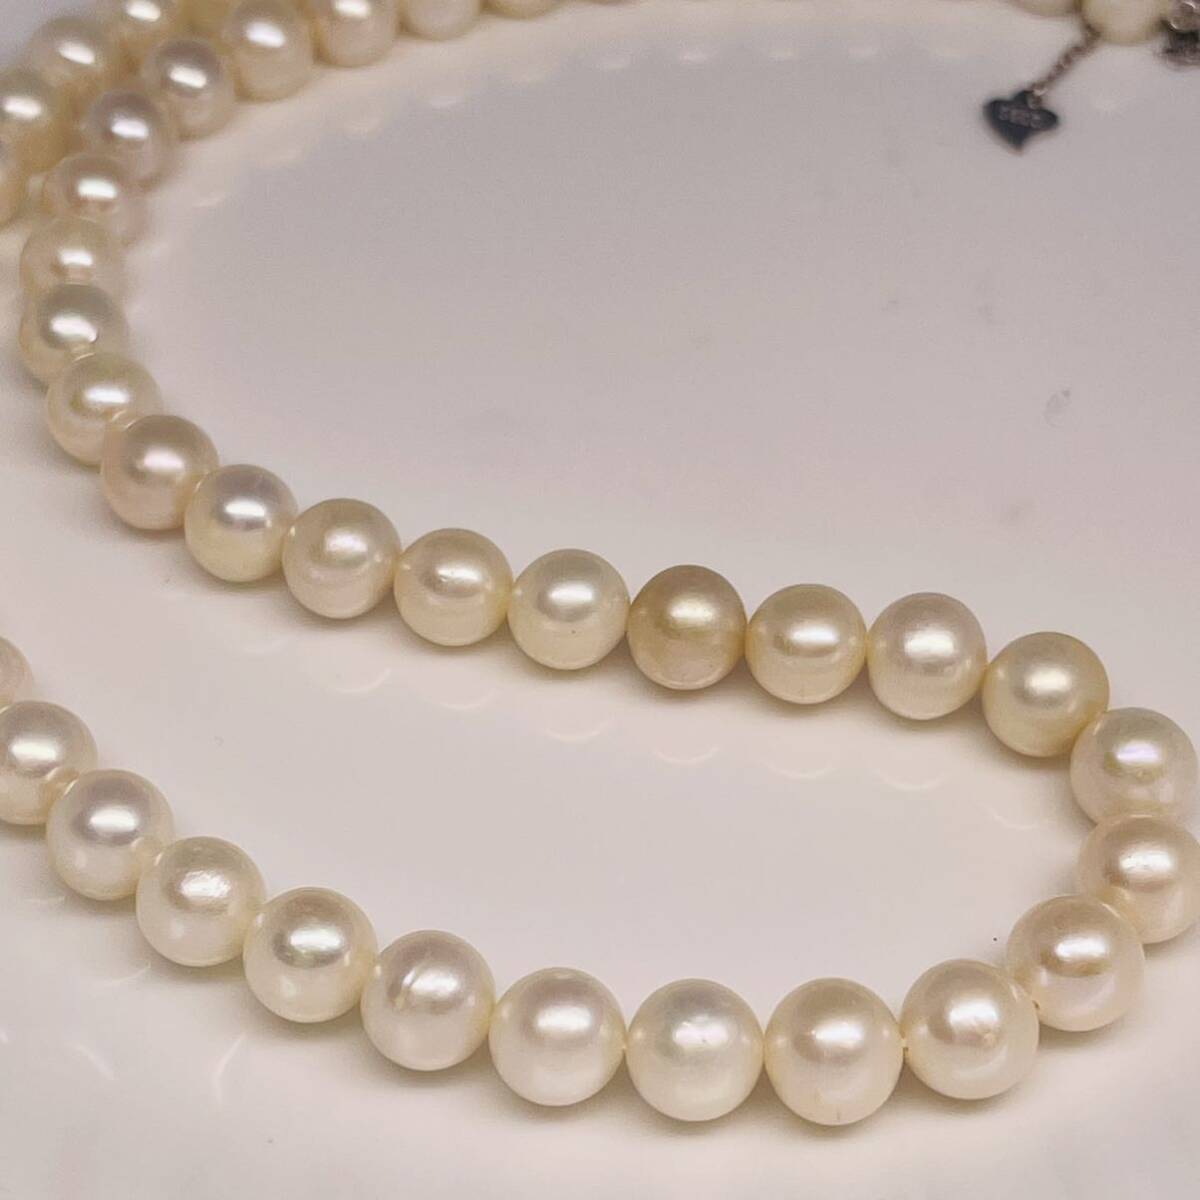 日本産 本真珠 パールネックレス 45cm 真珠ネックレスnecklace jewelry pearl ジュエリー 艶やか 養殖真珠 留め具部分SILVER刻印あり の画像5